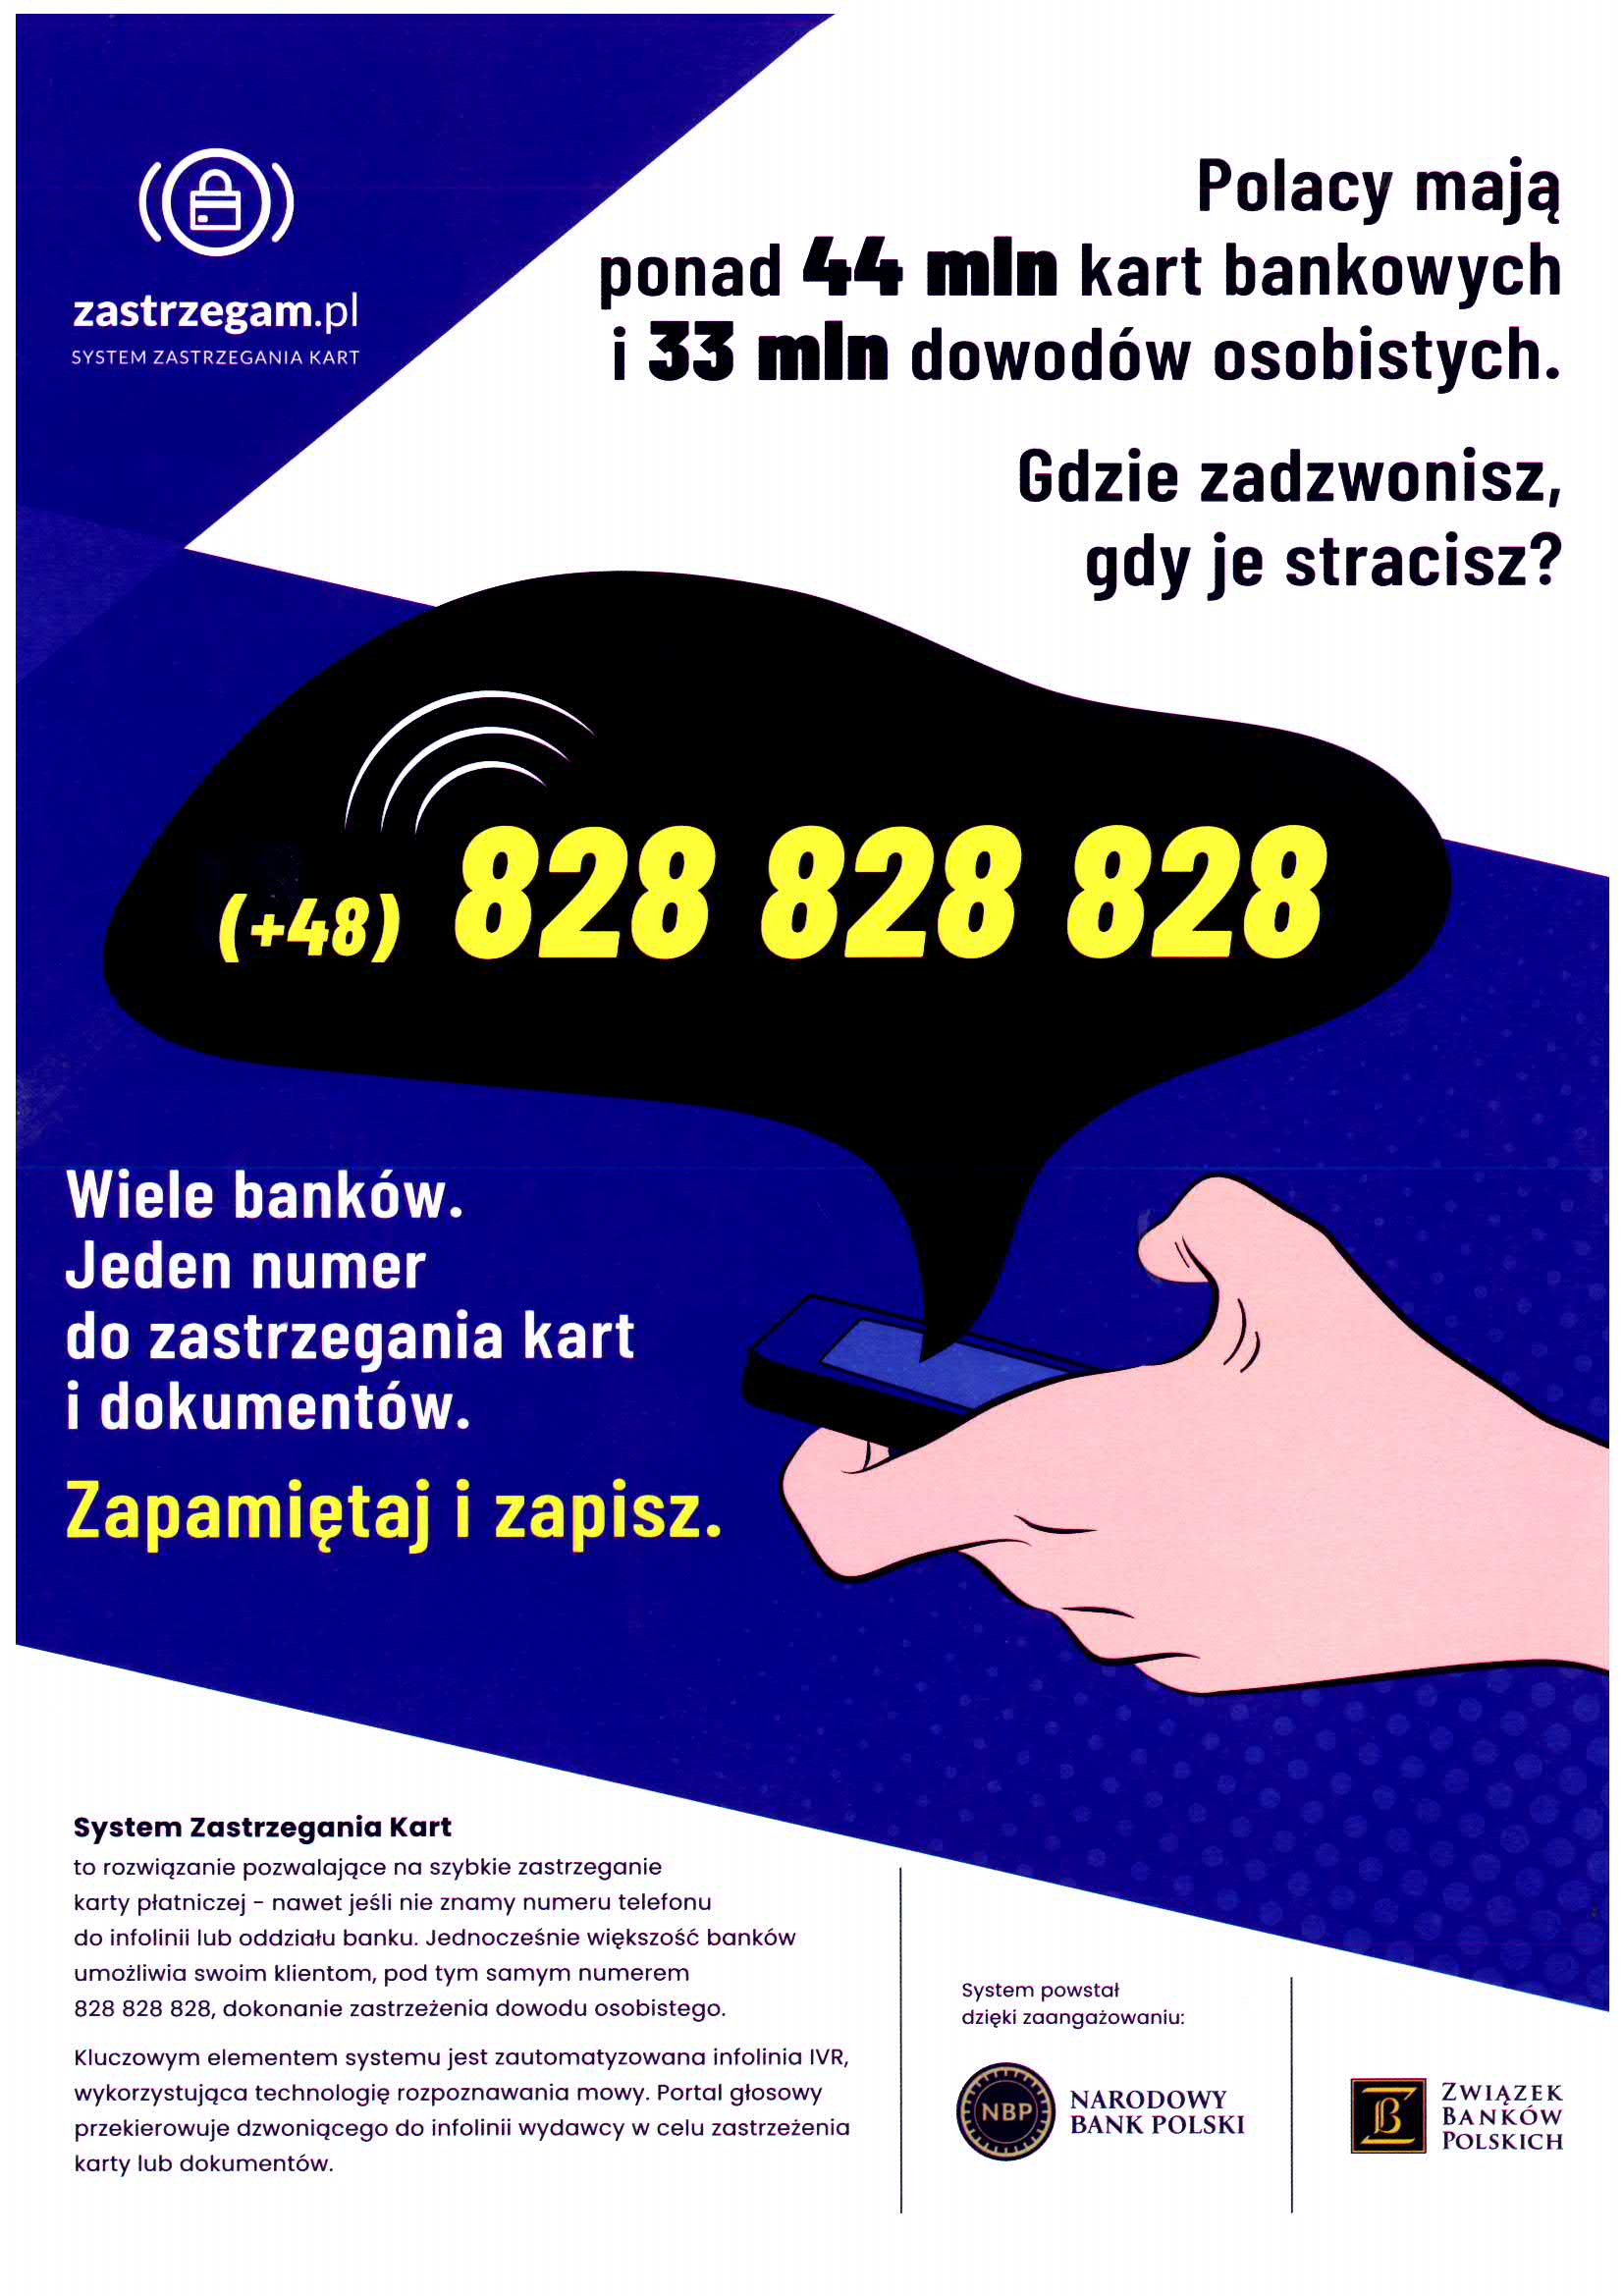 Plakat promujący System Zastrzegania Kart i portal zastrzegam.pl